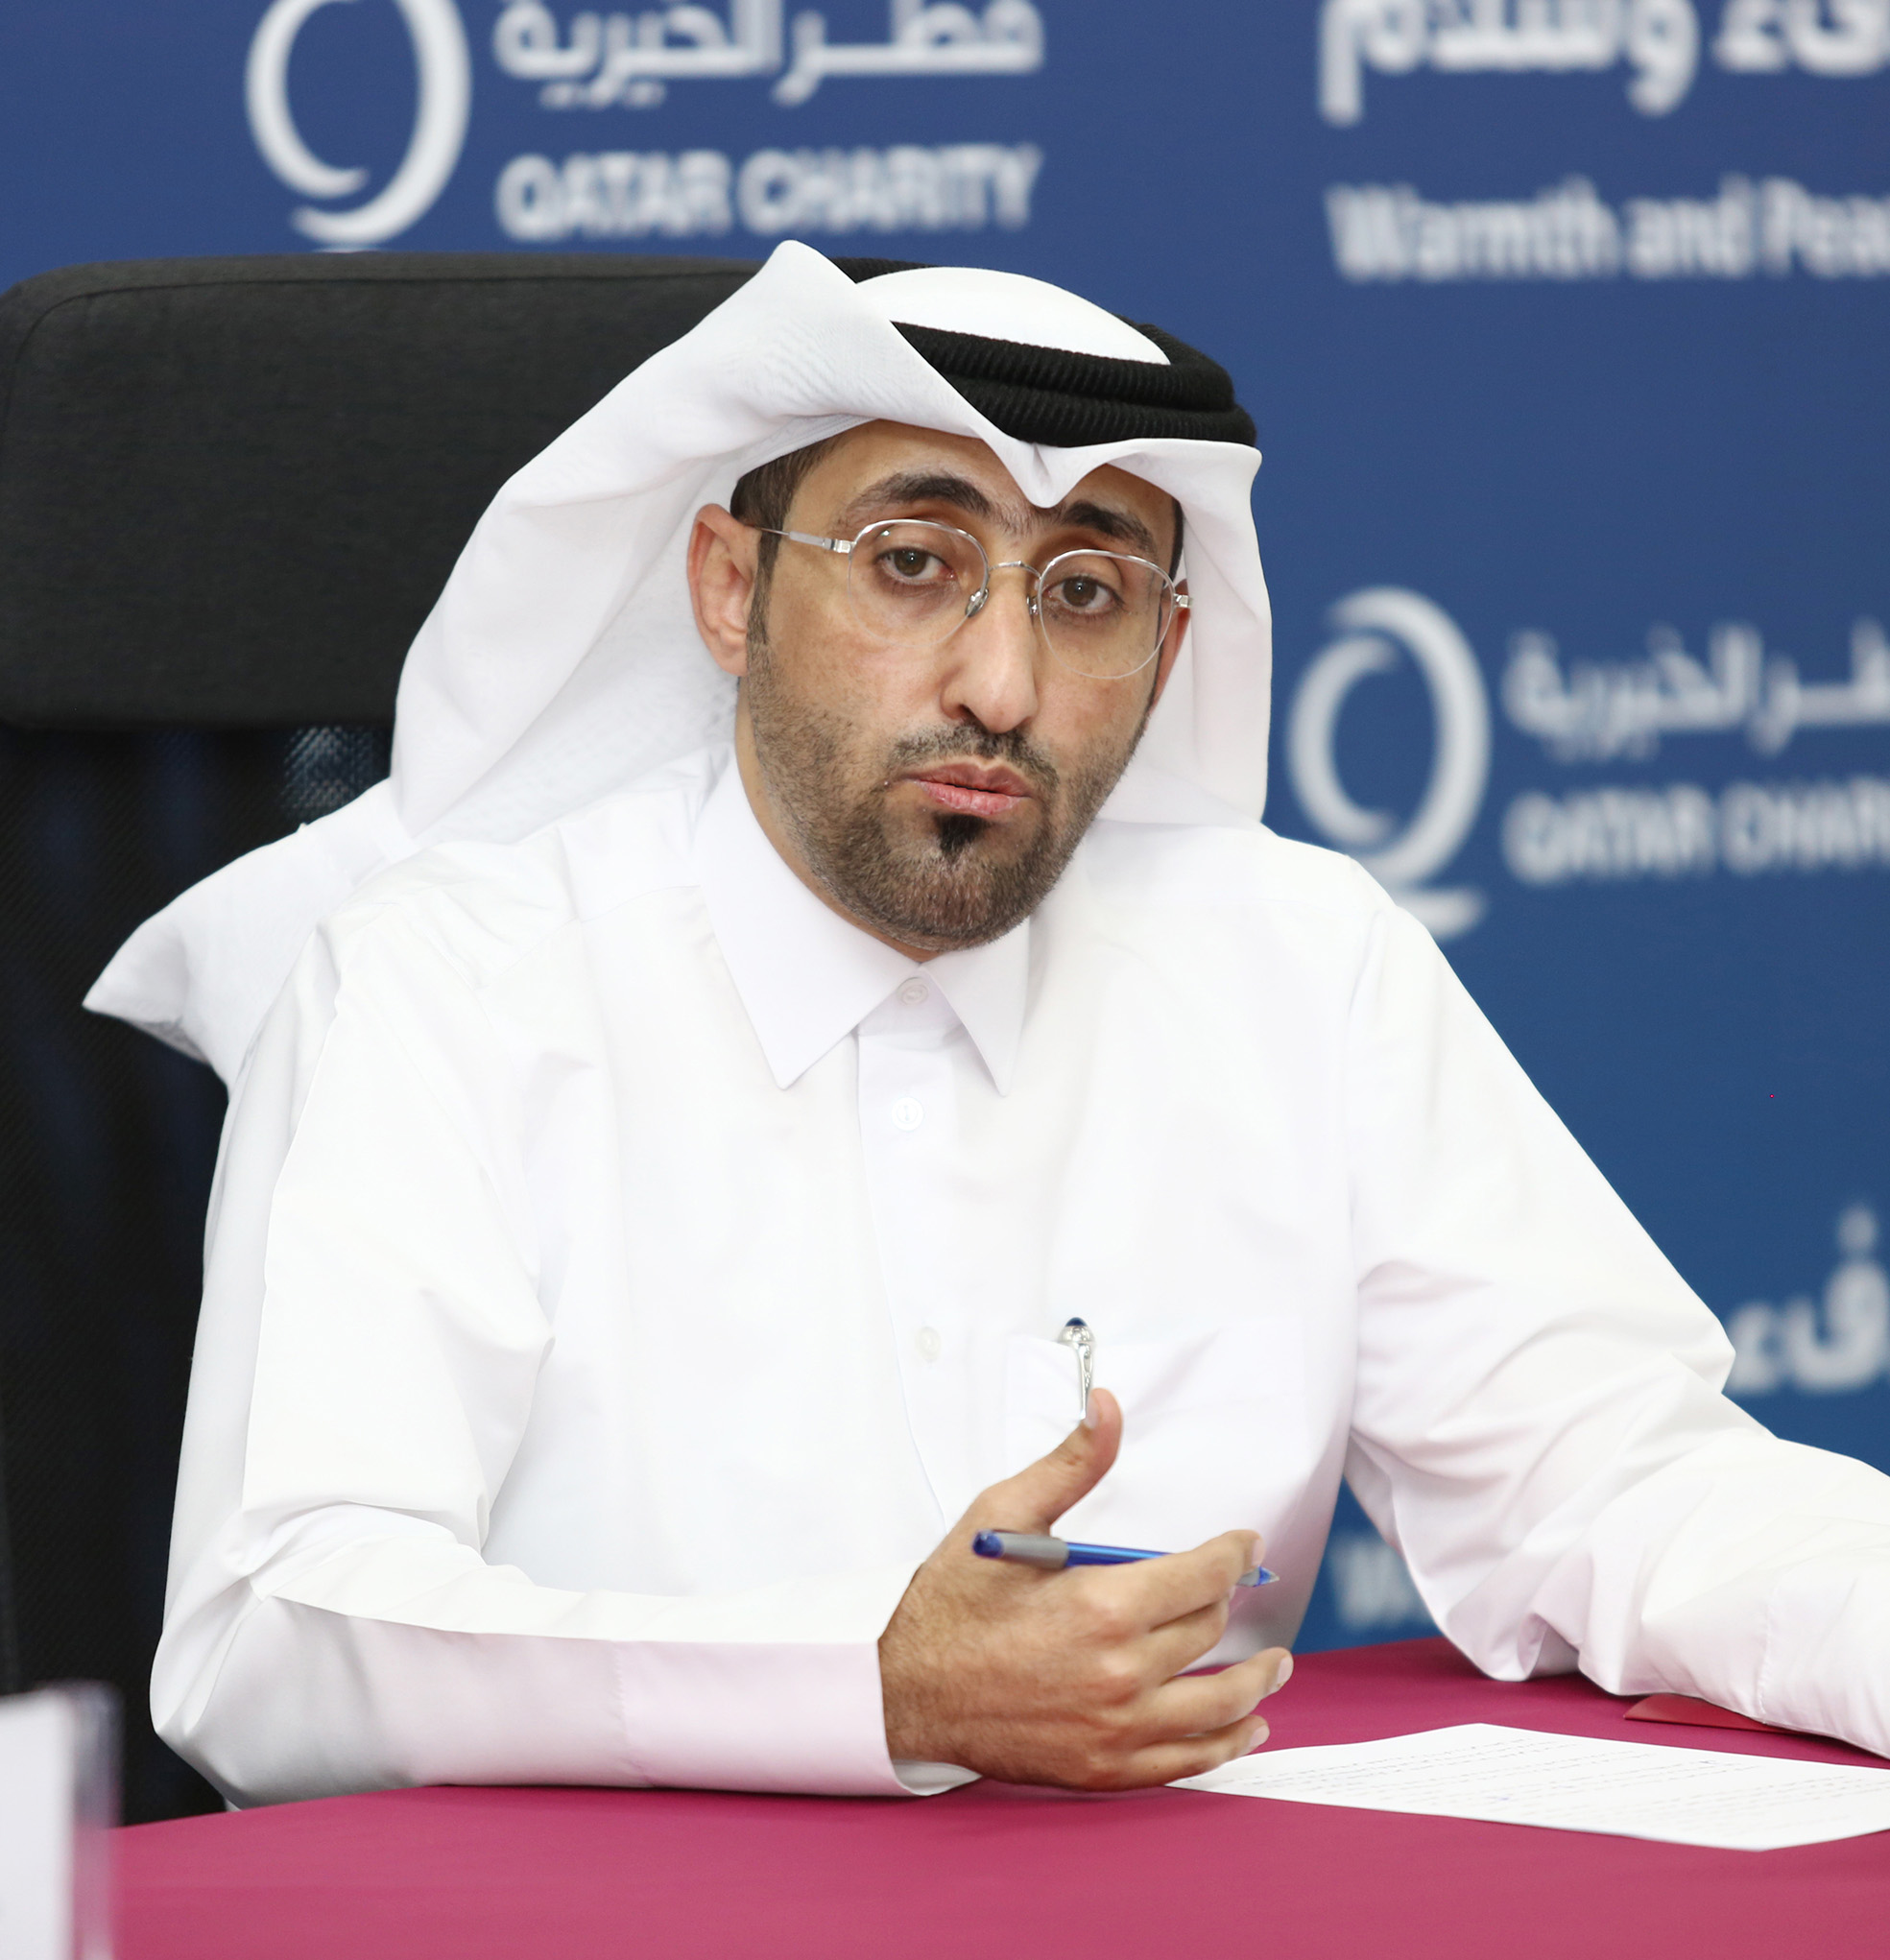 السيد خالد اليافعي مدير إدارة الطوارئ والإغاثة بقطر الخيرية